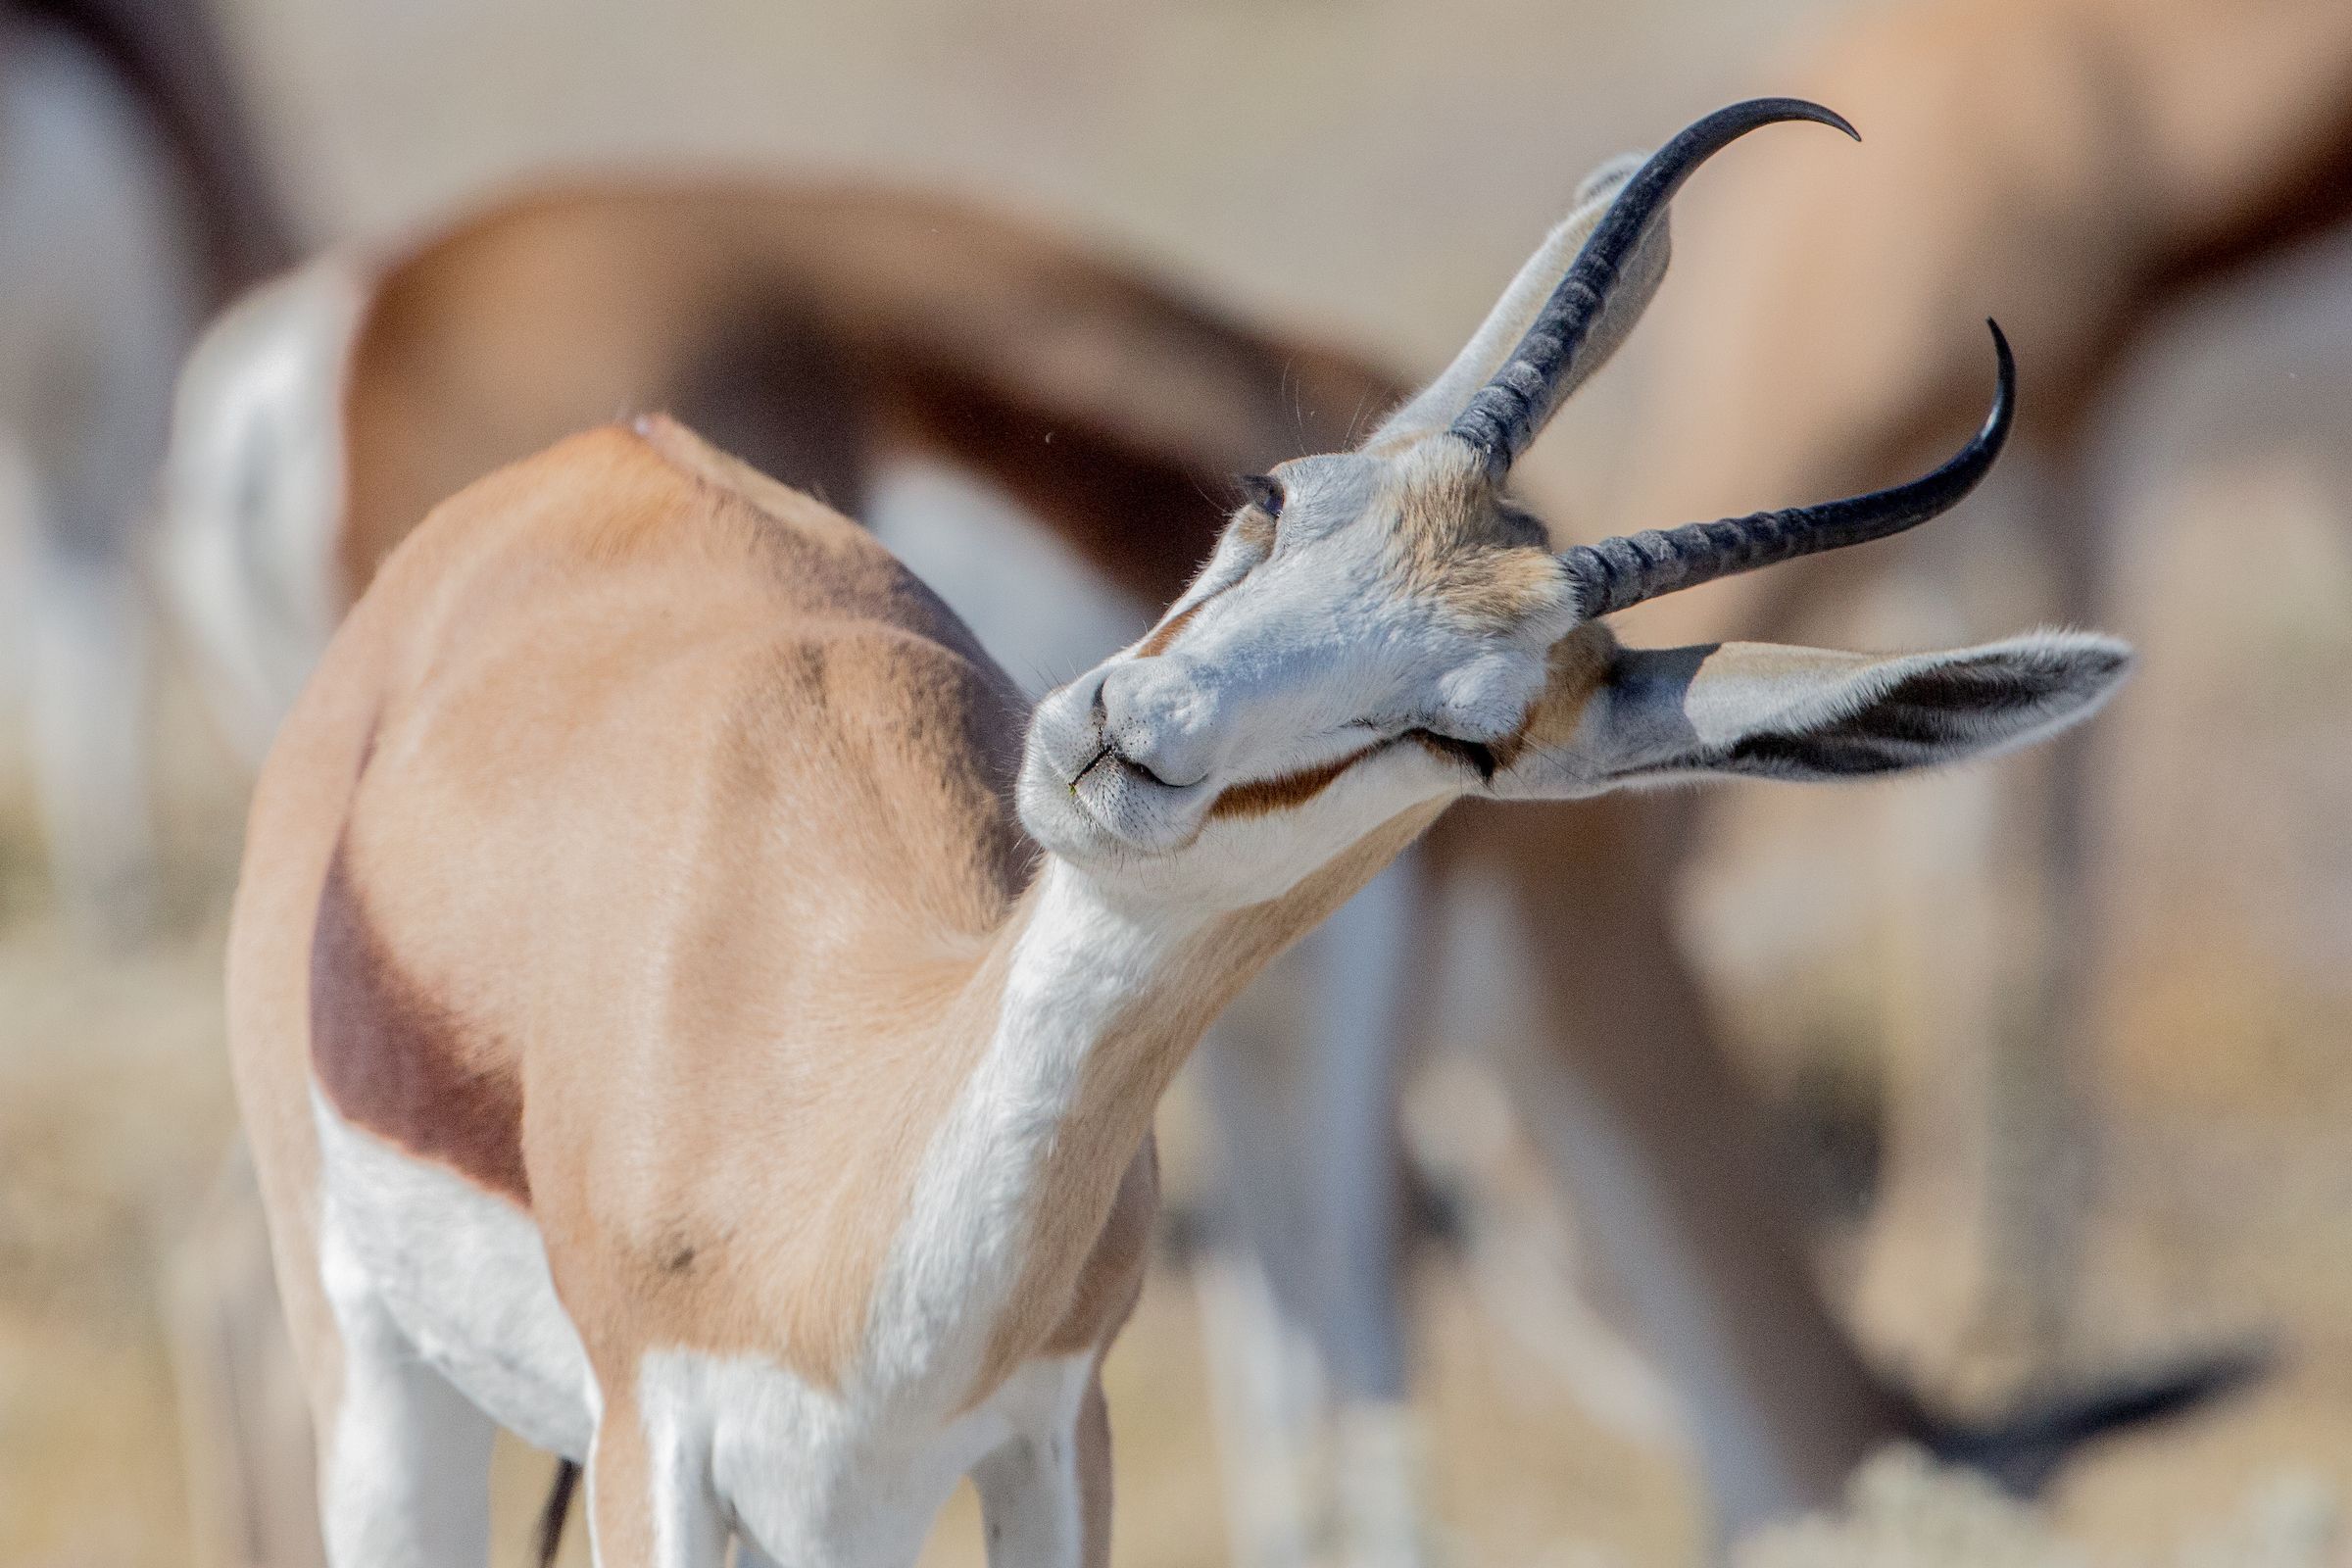 Springbok during our wildlife photography tour of Namibia